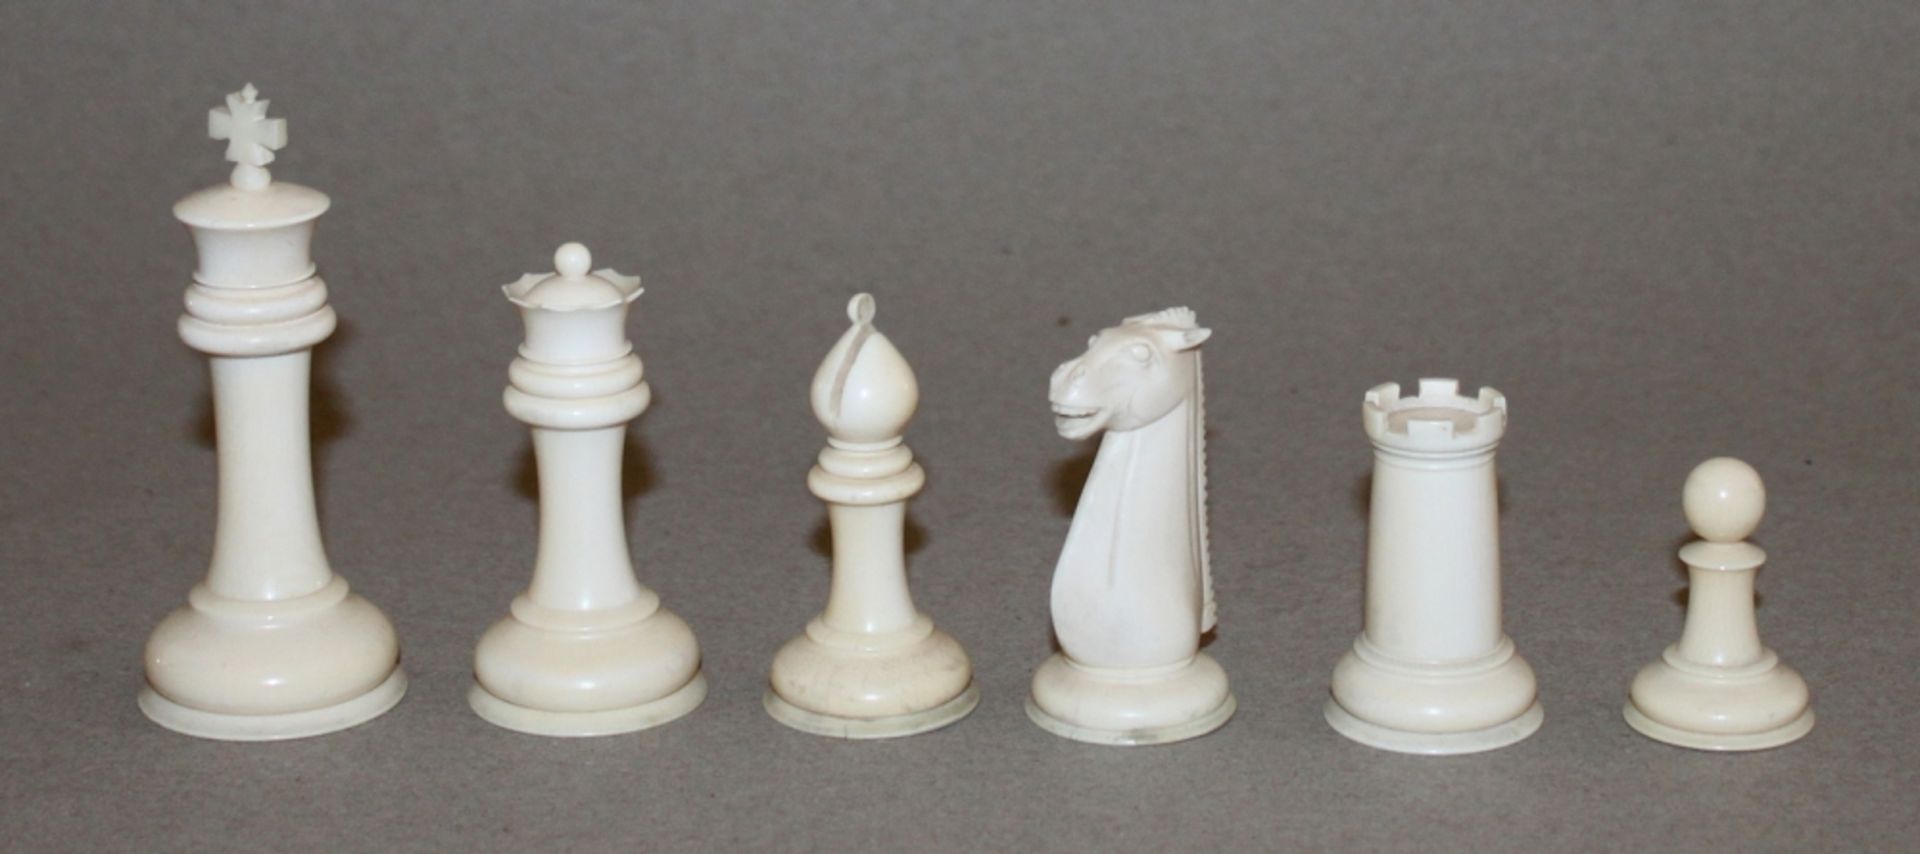 Europa. Deutschland. Elfenbein. Schachfiguren aus Elfenbein, in Anlehnung an den Staunton - Stil. - Image 2 of 3